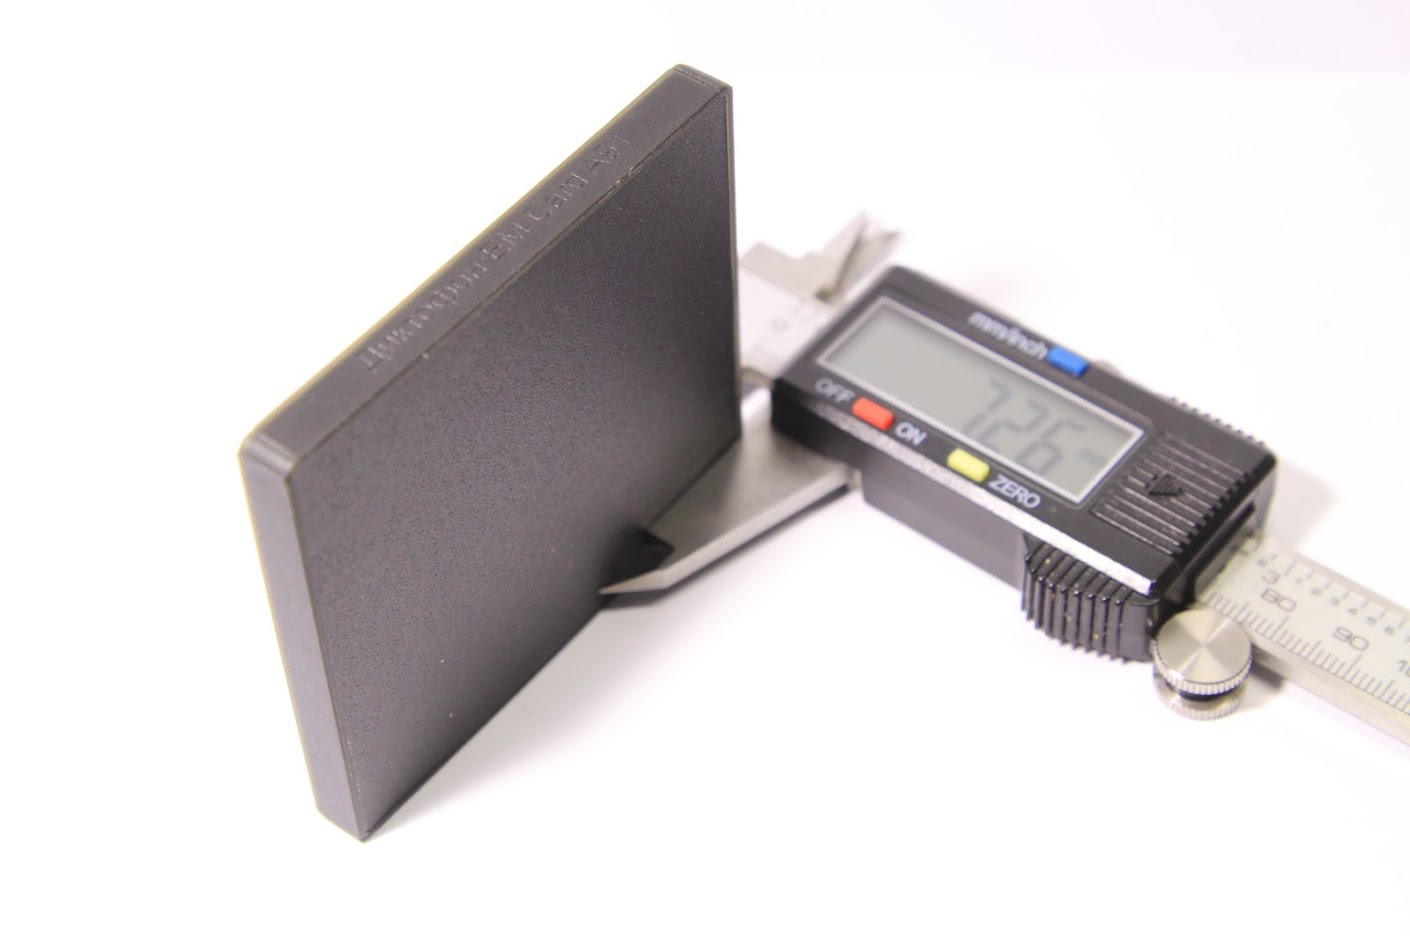 Все Телесистемы Edic-mini Card A91 видеонаблюдения в магазине Vidos Group